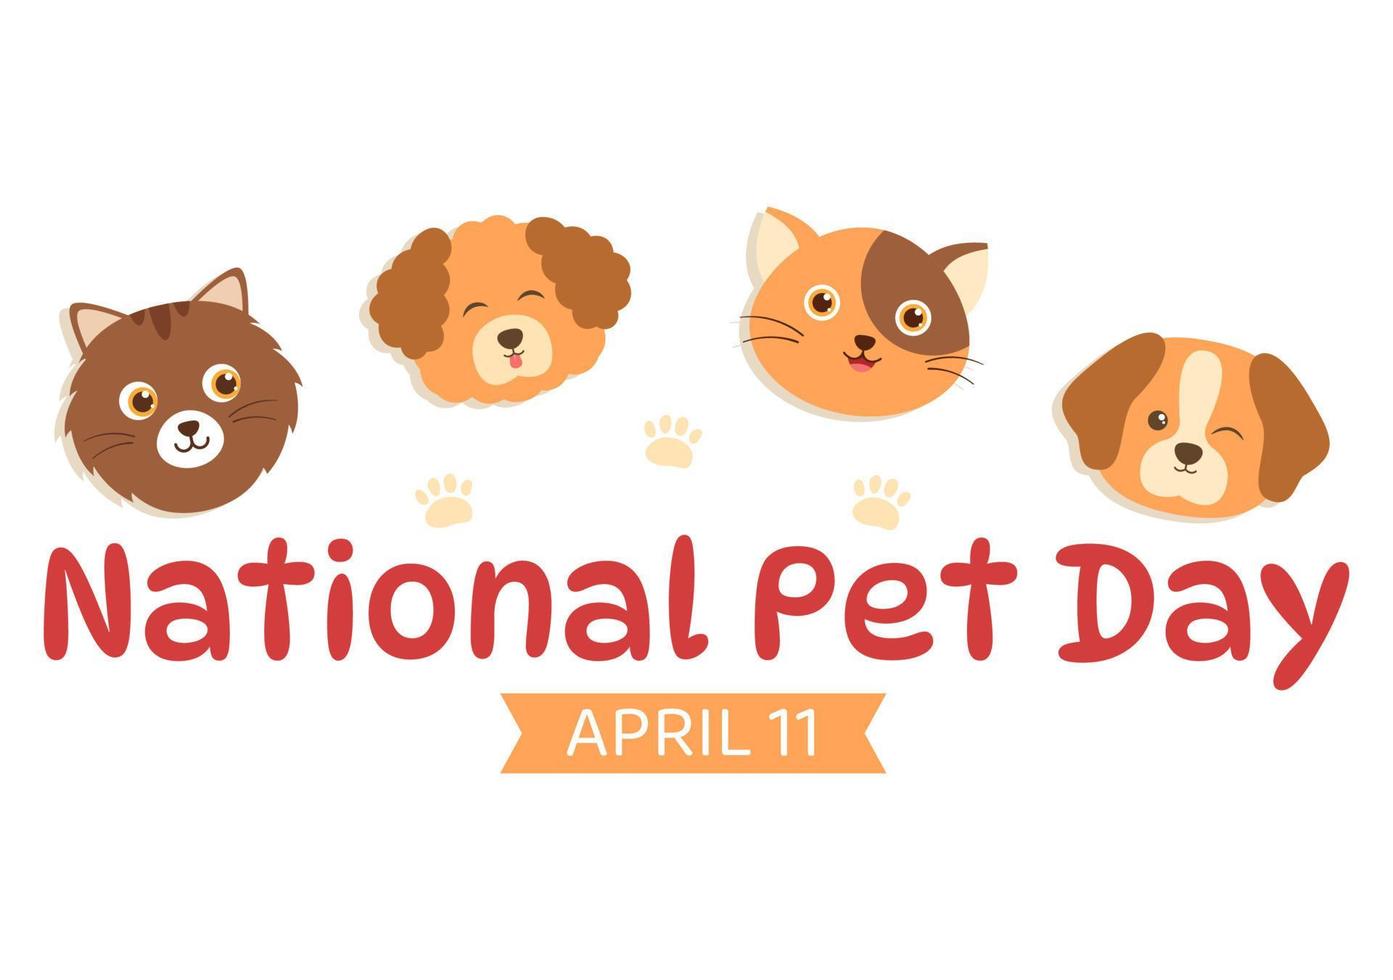 ilustración del día nacional de las mascotas el 11 de abril con lindas mascotas de gatos y perros para banner web o página de inicio en plantillas planas dibujadas a mano de dibujos animados vector